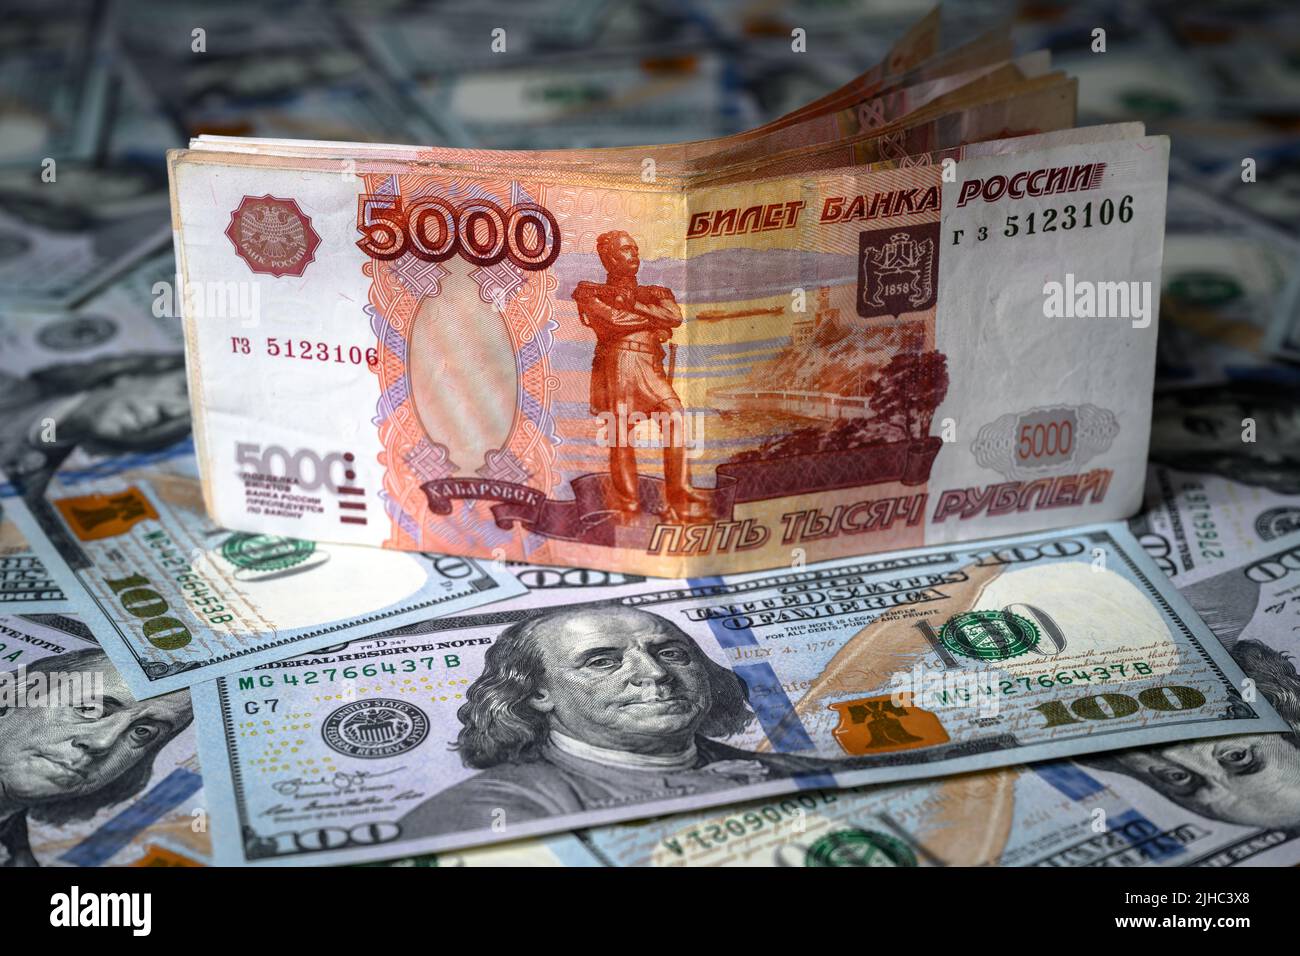 El dinero del rublo ruso frente al dólar estadounidense, el billete de rublo está encima de la pila de billetes de dólar. Concepto de sanciones, moneda, victoria del rublo, economía de Rusia a Foto de stock